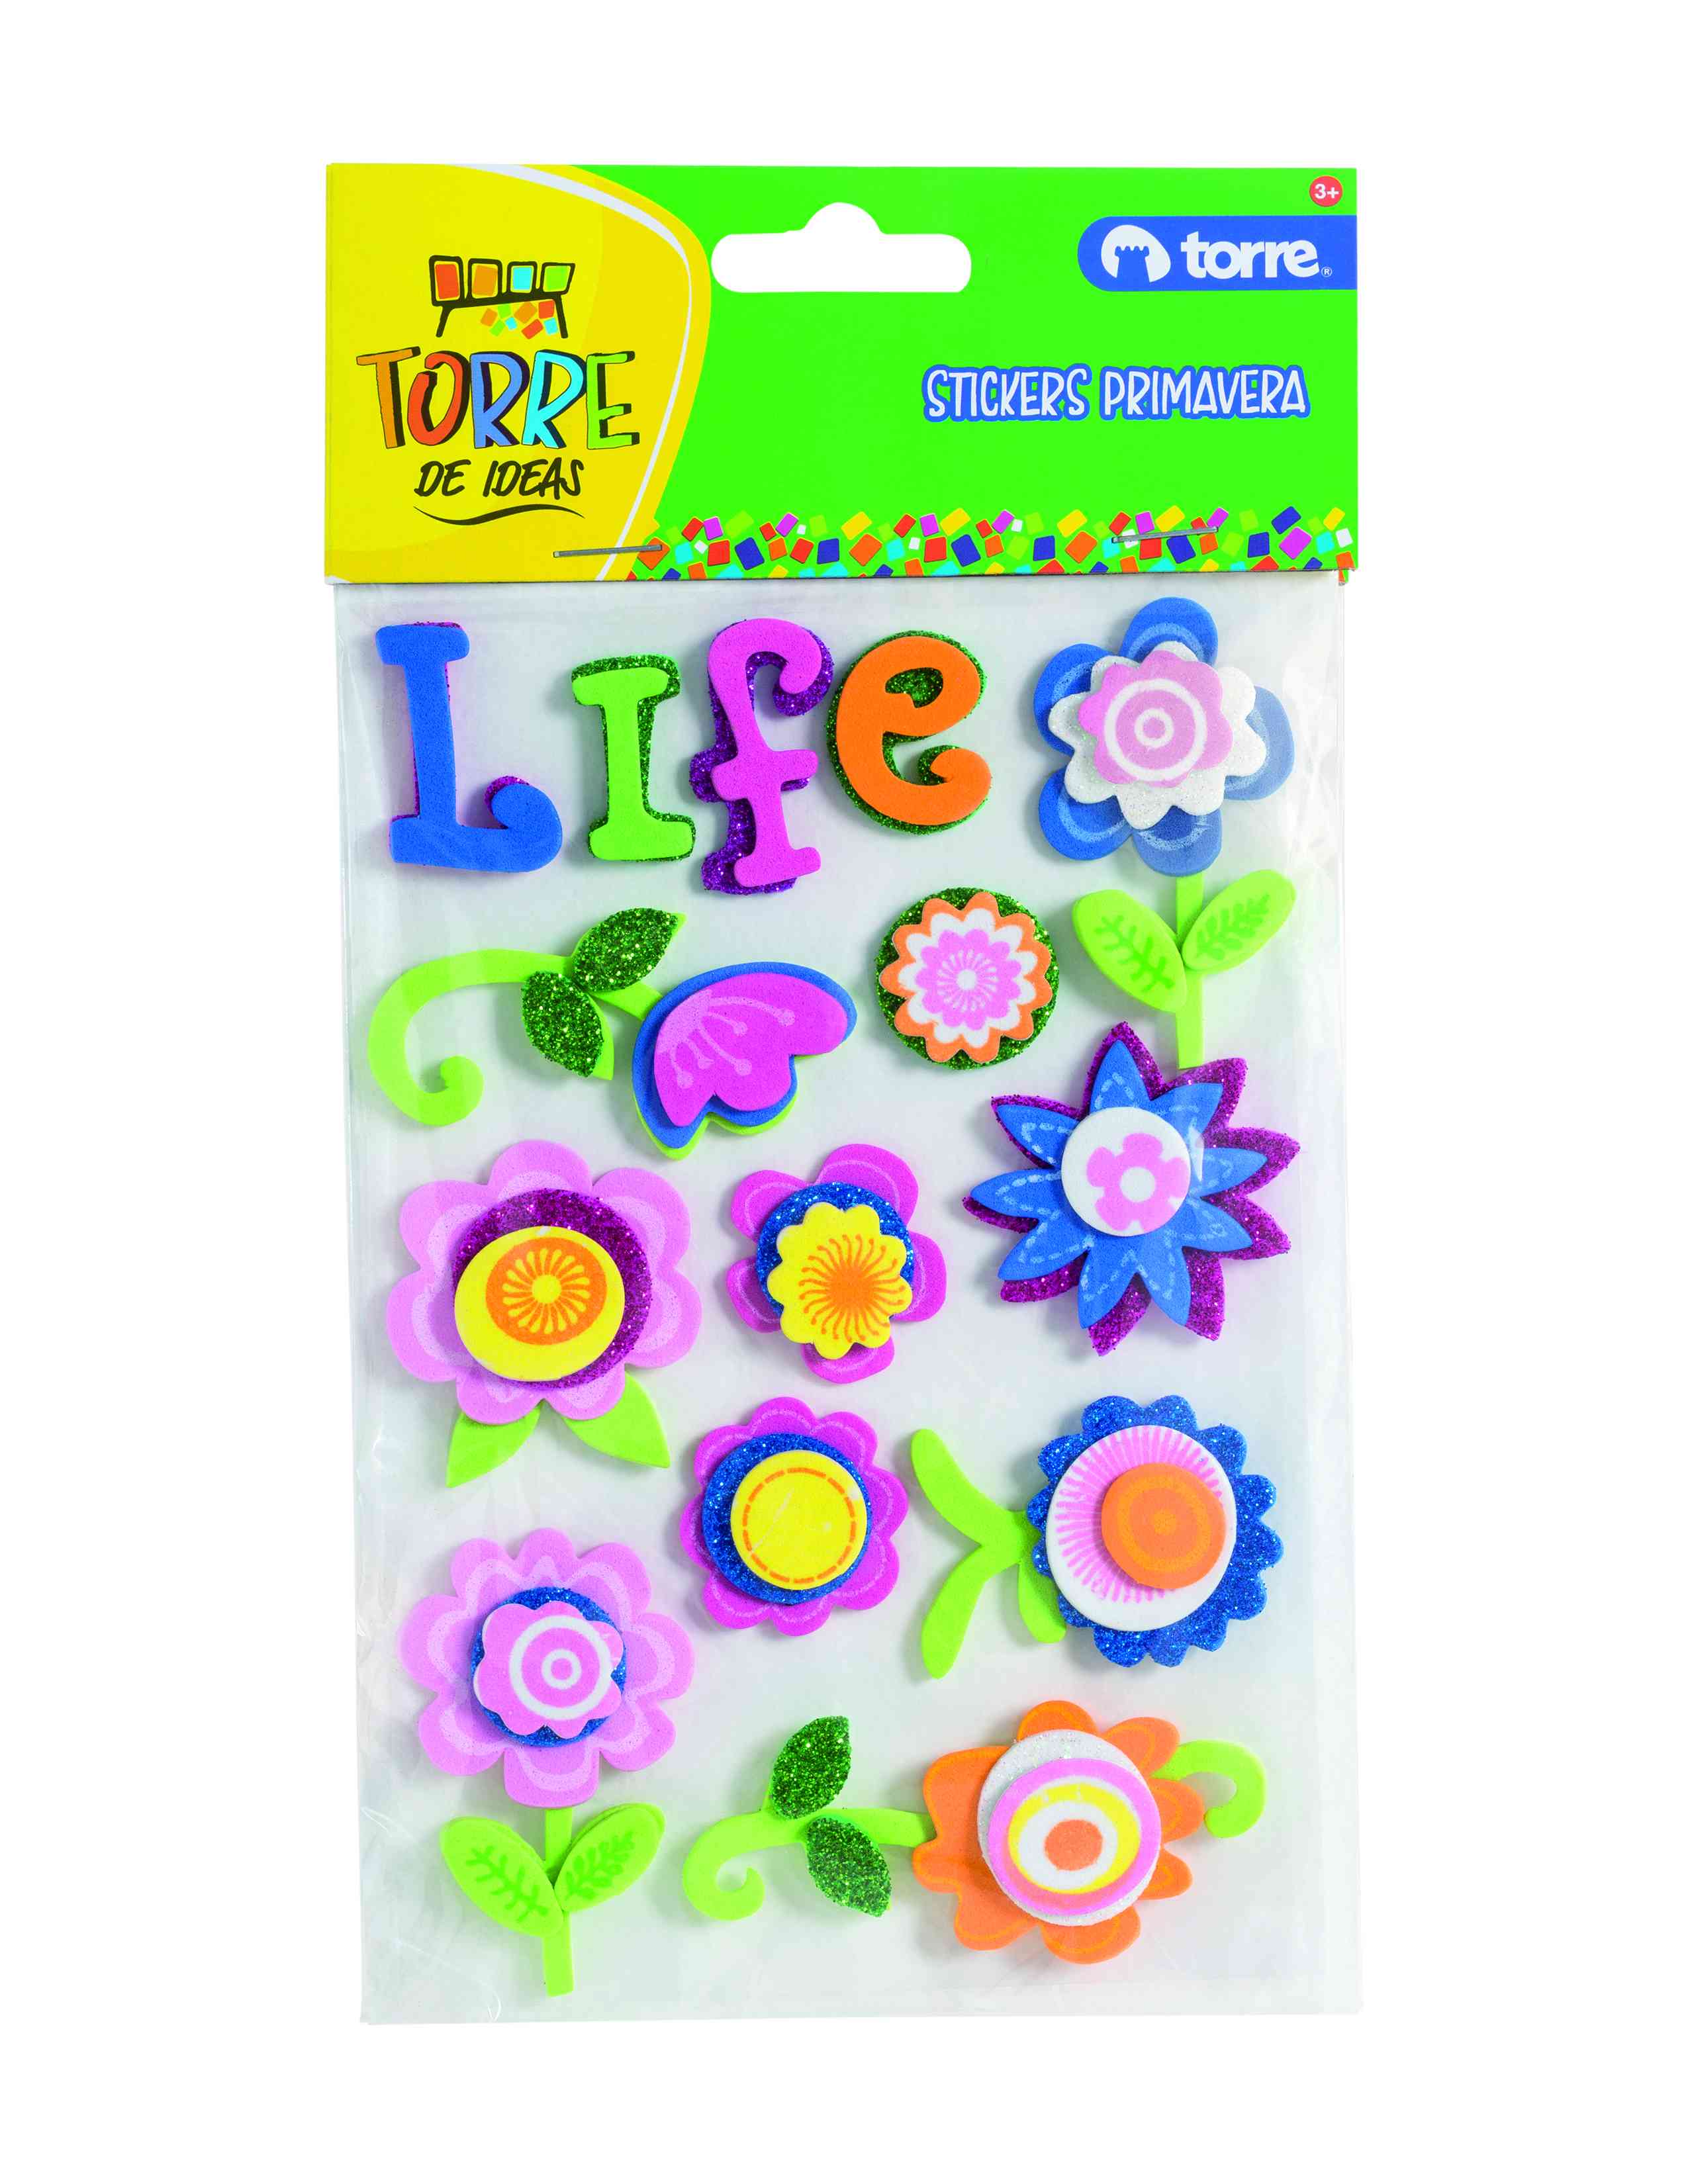 Stickers goma eva flores life